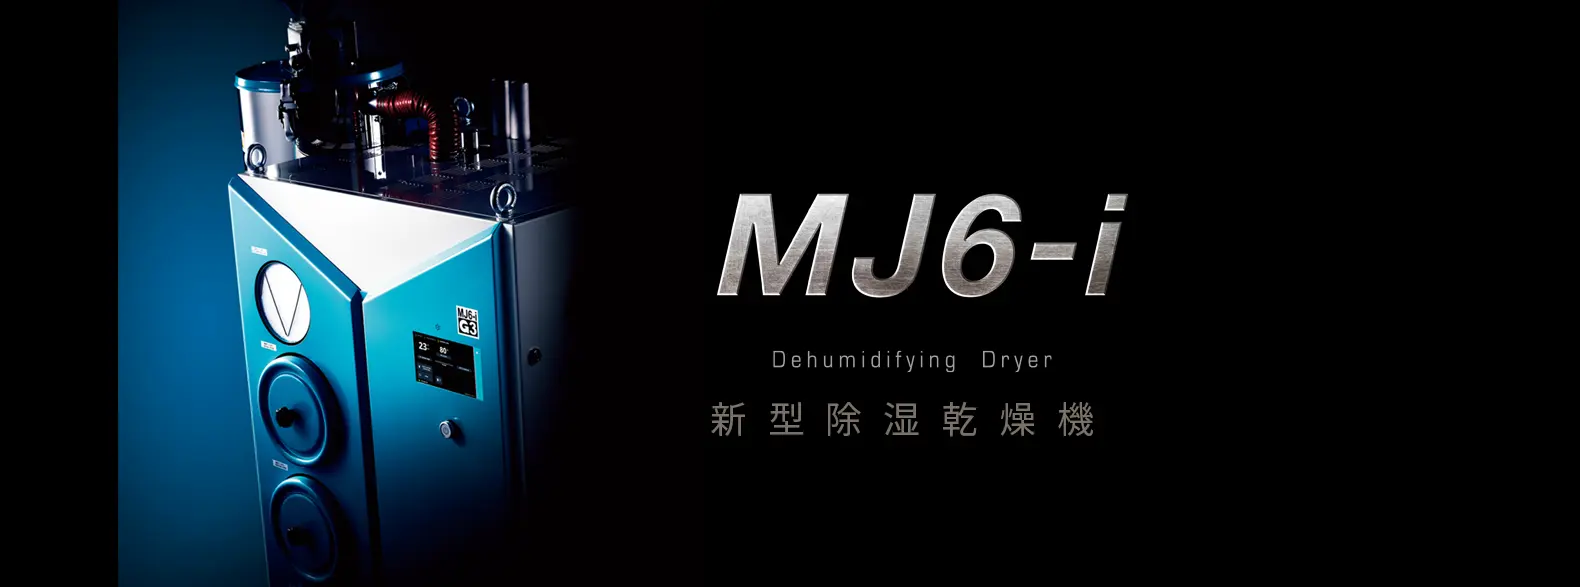 除湿乾燥機「MJ6-i」のメインバナー